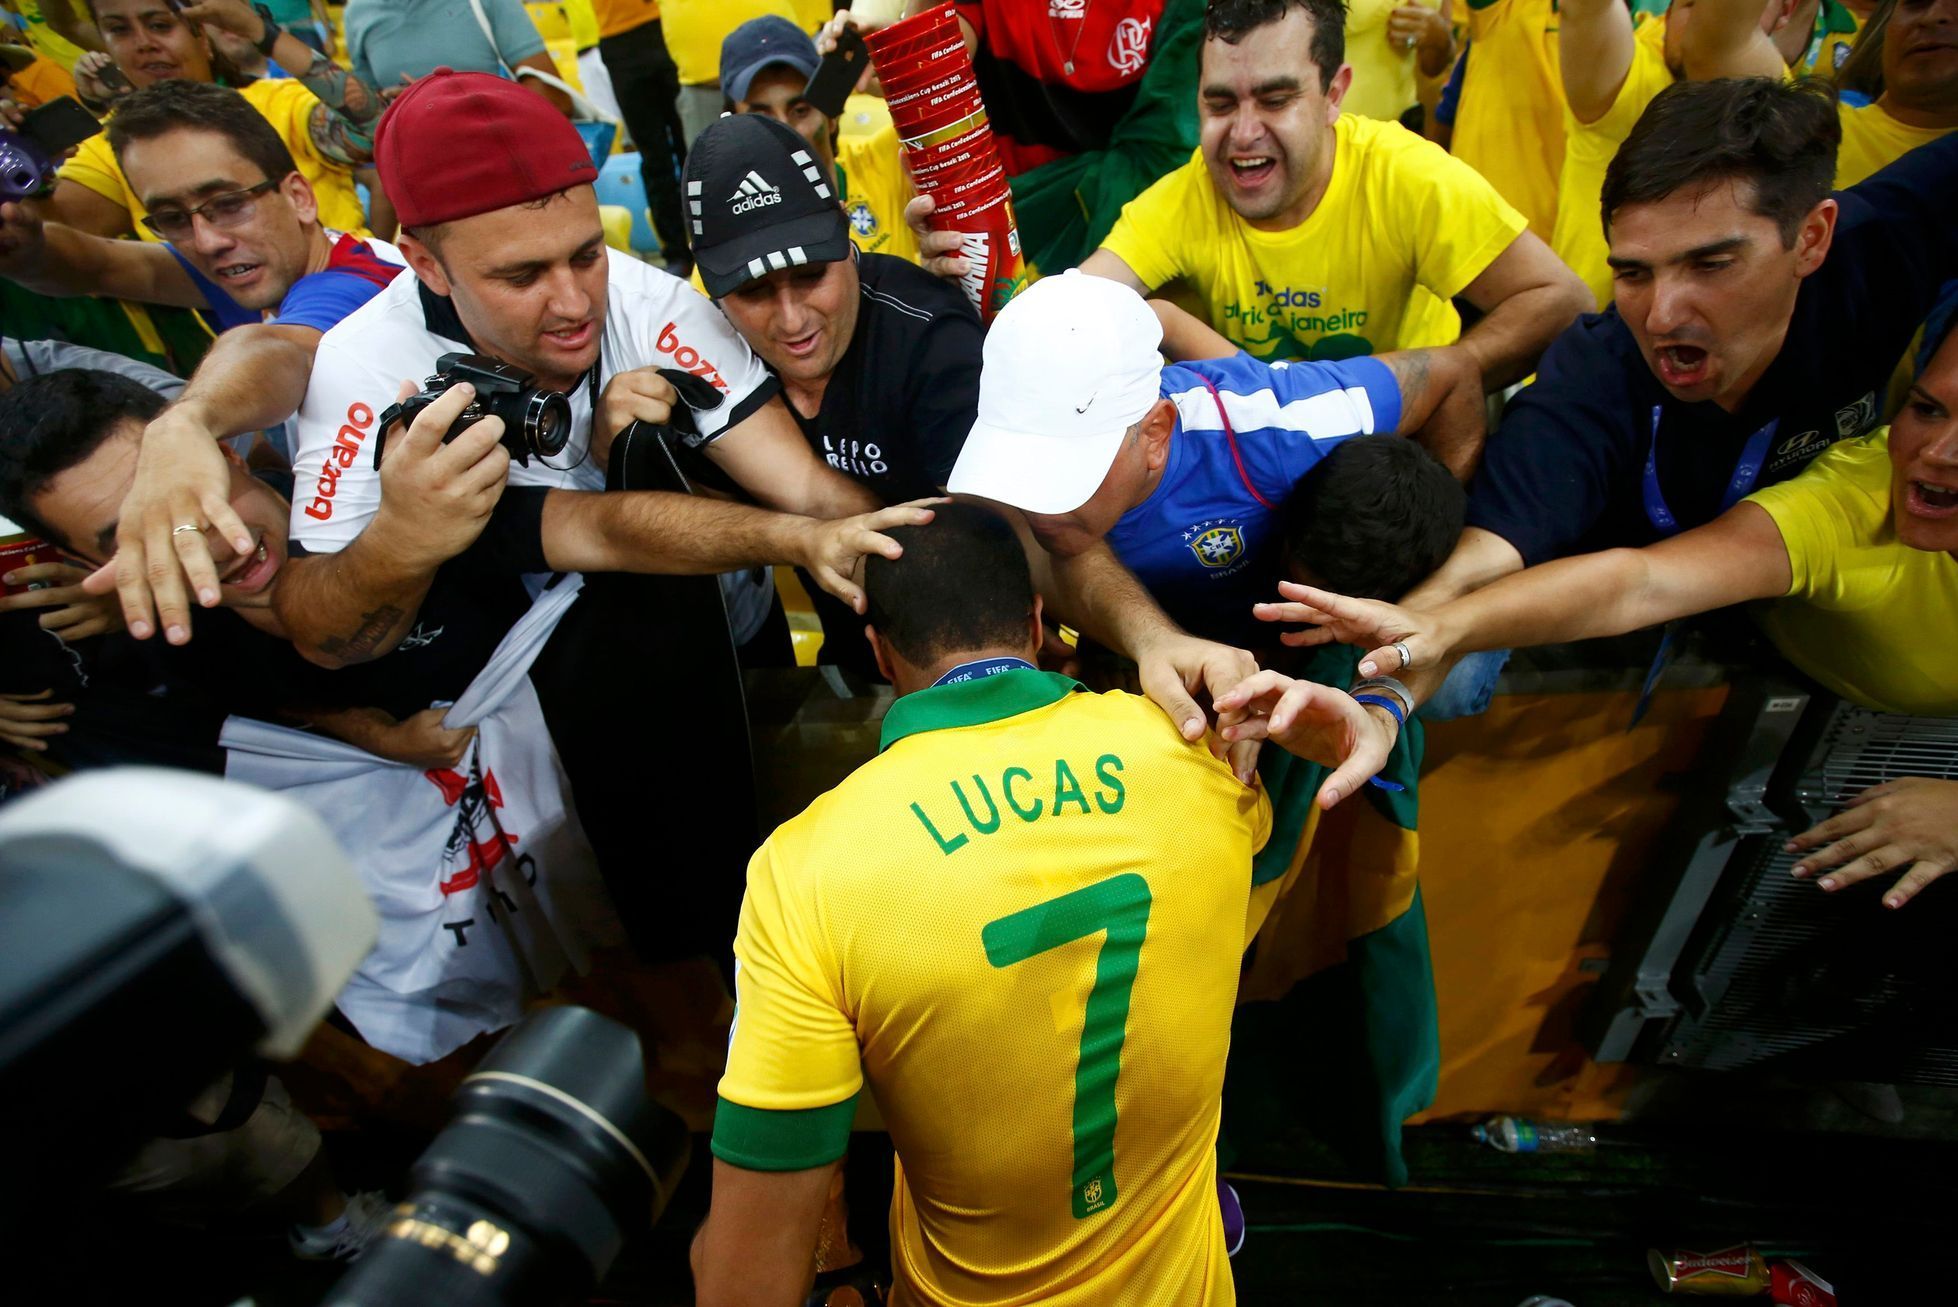 Fans congratulate Brazil's Lucas after winning their Confede